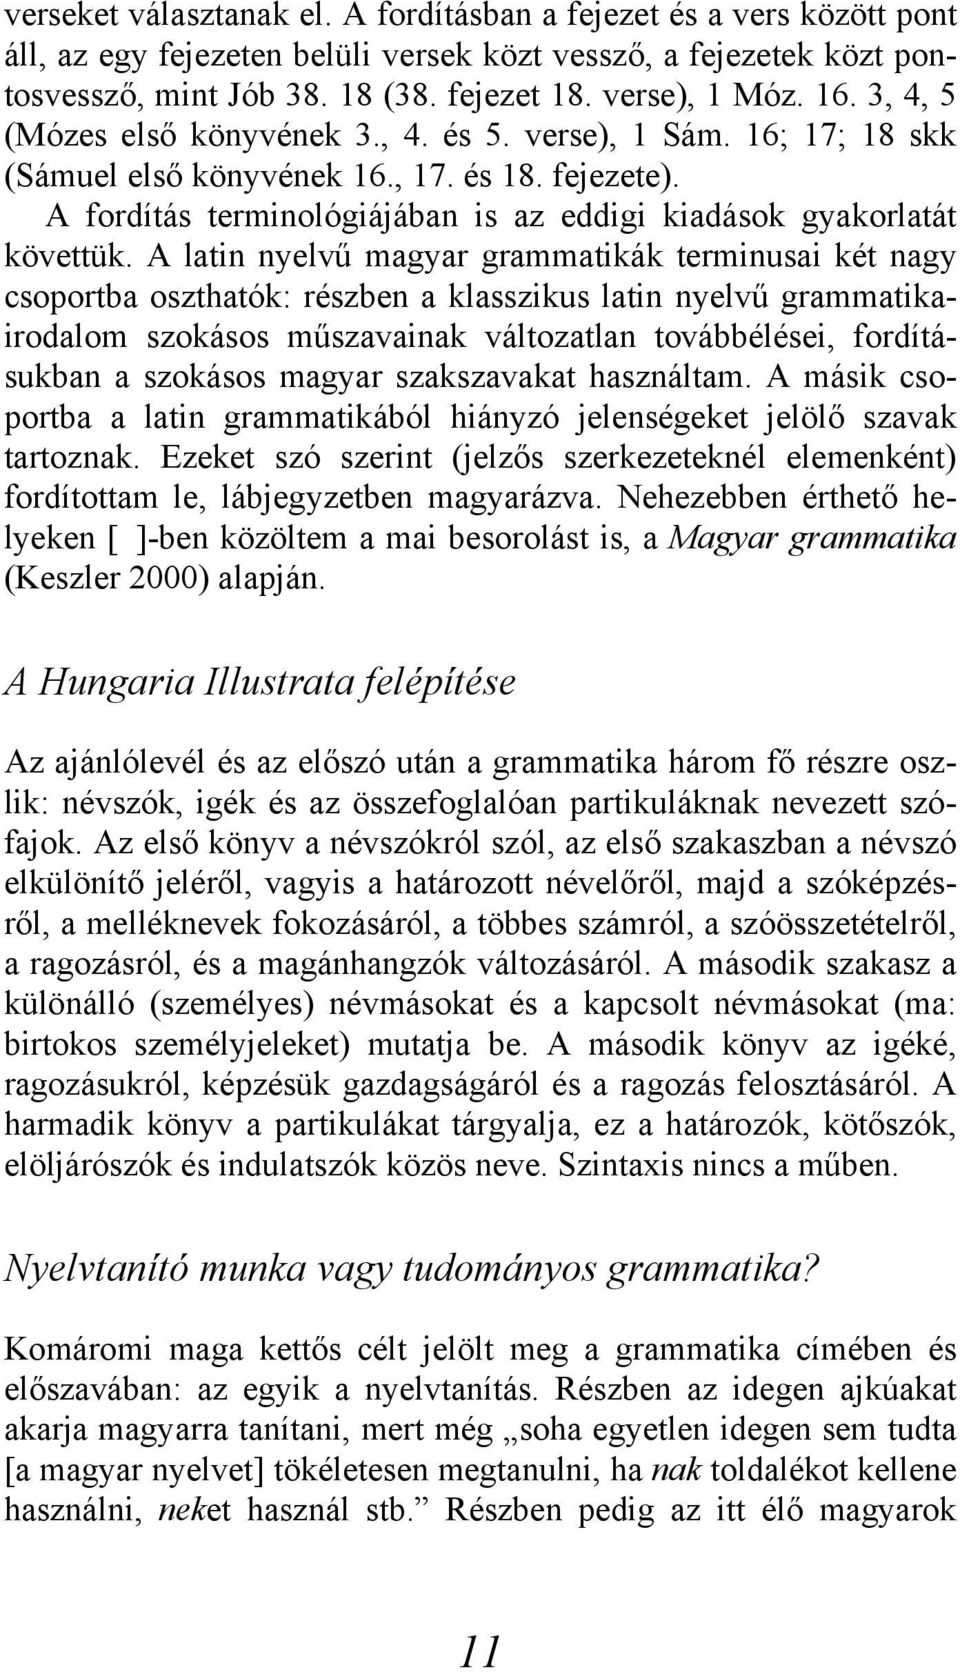 A latin nyelvű magyar grammatikák terminusai két nagy csoportba oszthatók: részben a klasszikus latin nyelvű grammatikairodalom szokásos műszavainak változatlan továbbélései, fordításukban a szokásos